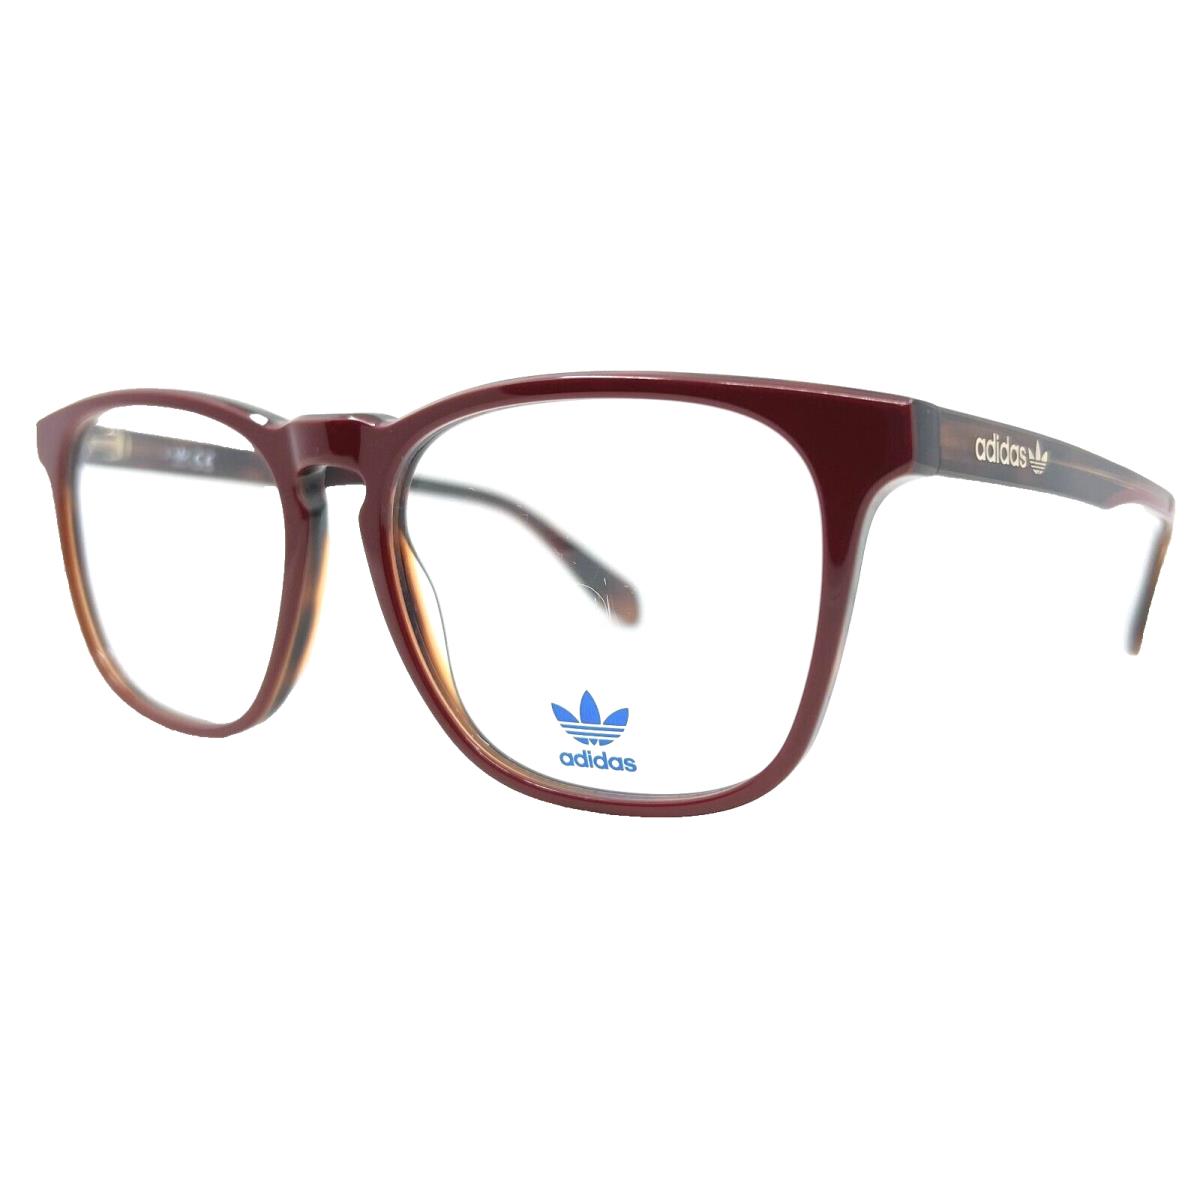 Adidas Originals - OR5020 068 56/16/145 Burgundy Eyeglasses Case - Frame: Red